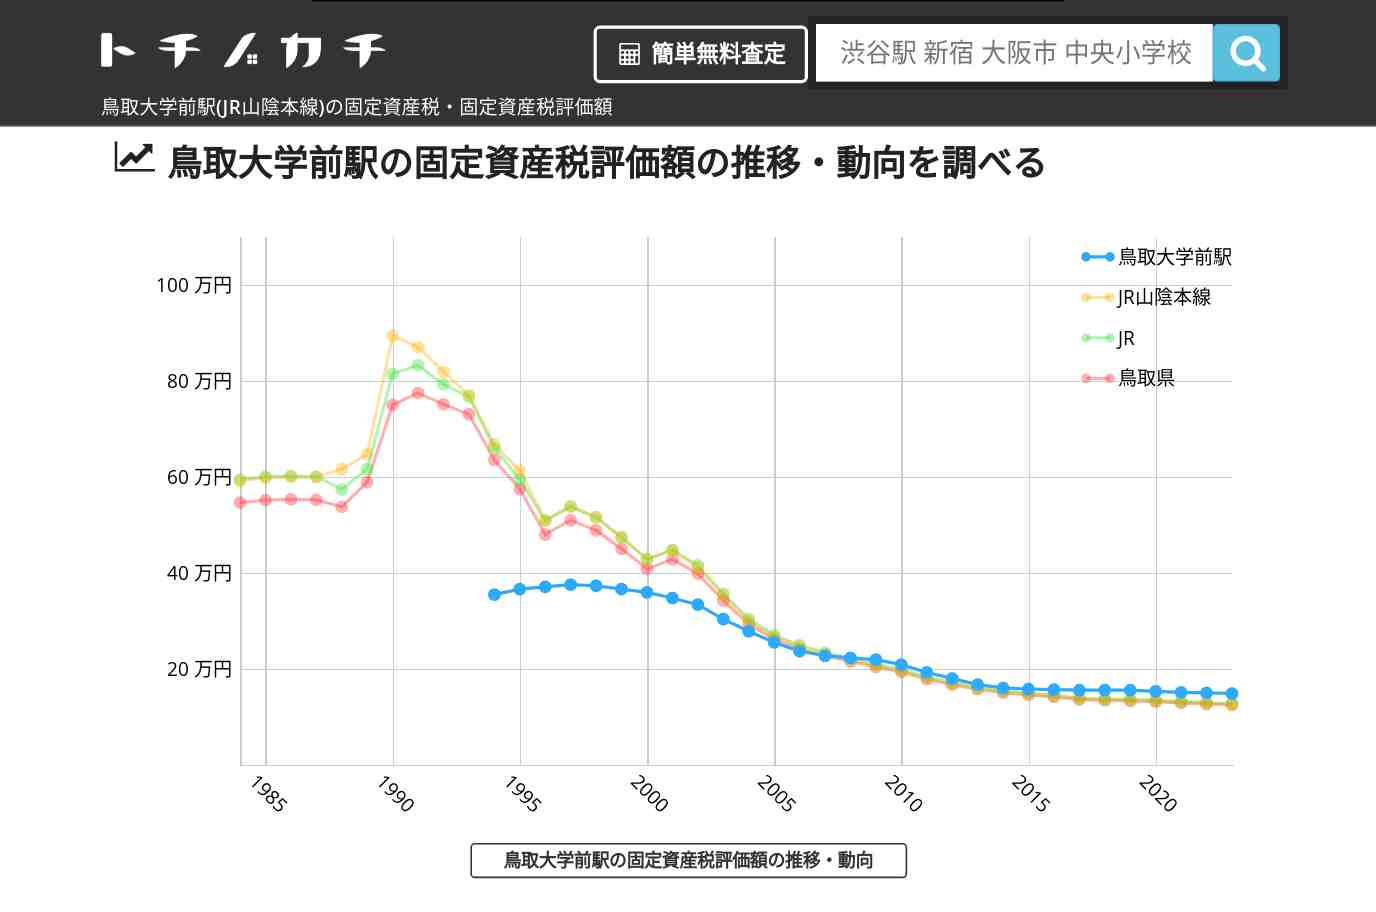 鳥取大学前駅(JR山陰本線)の固定資産税・固定資産税評価額 | トチノカチ